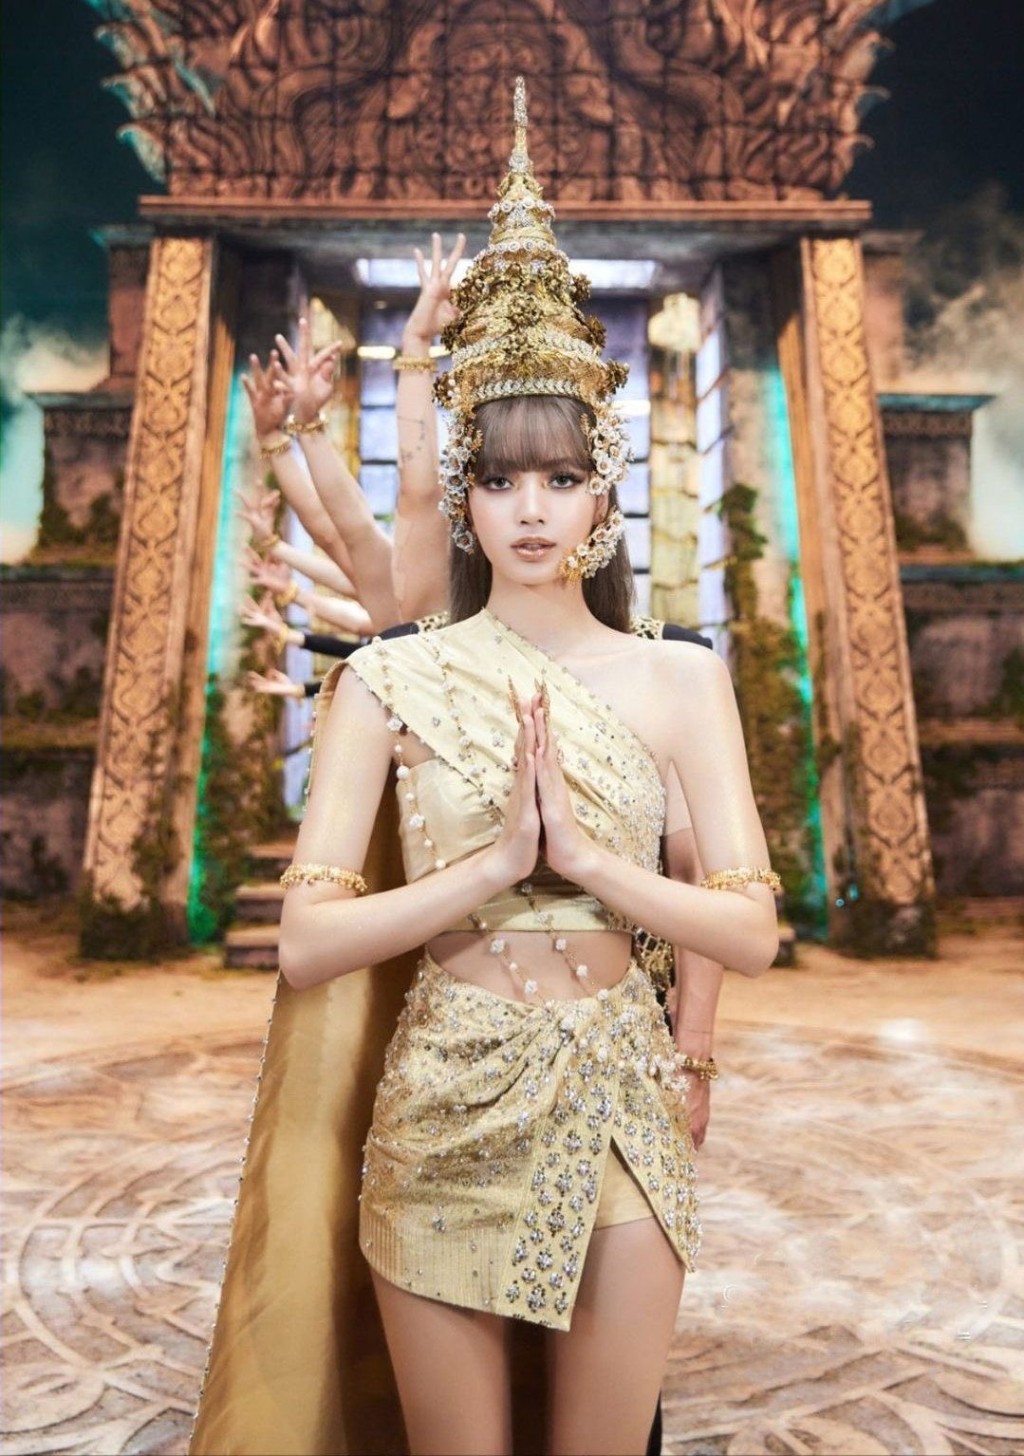 近年因爲泰國人氣古裝神劇《天生一對》（Love Destiny）以及Blackpink成員 Lisa在Lalisa 音樂影片穿過傳統泰服，因而掀起貴族泰服熱潮。不少網紅跟隨熱潮也到泰國曼谷影貴族泰服寫真。